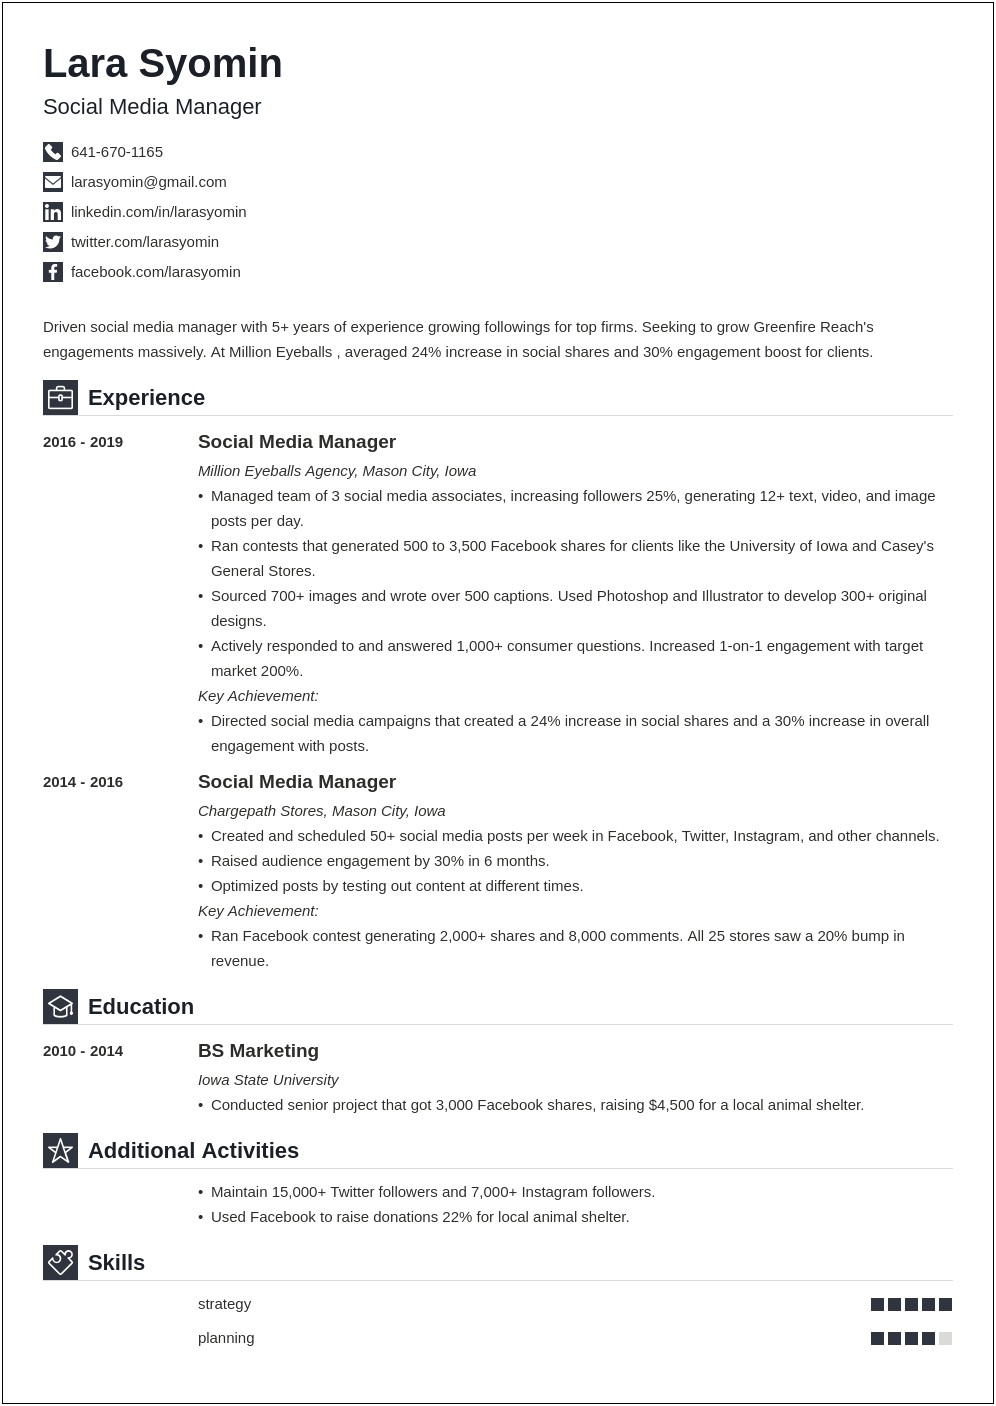 Caseys General Store Team Memebr Description For Resume